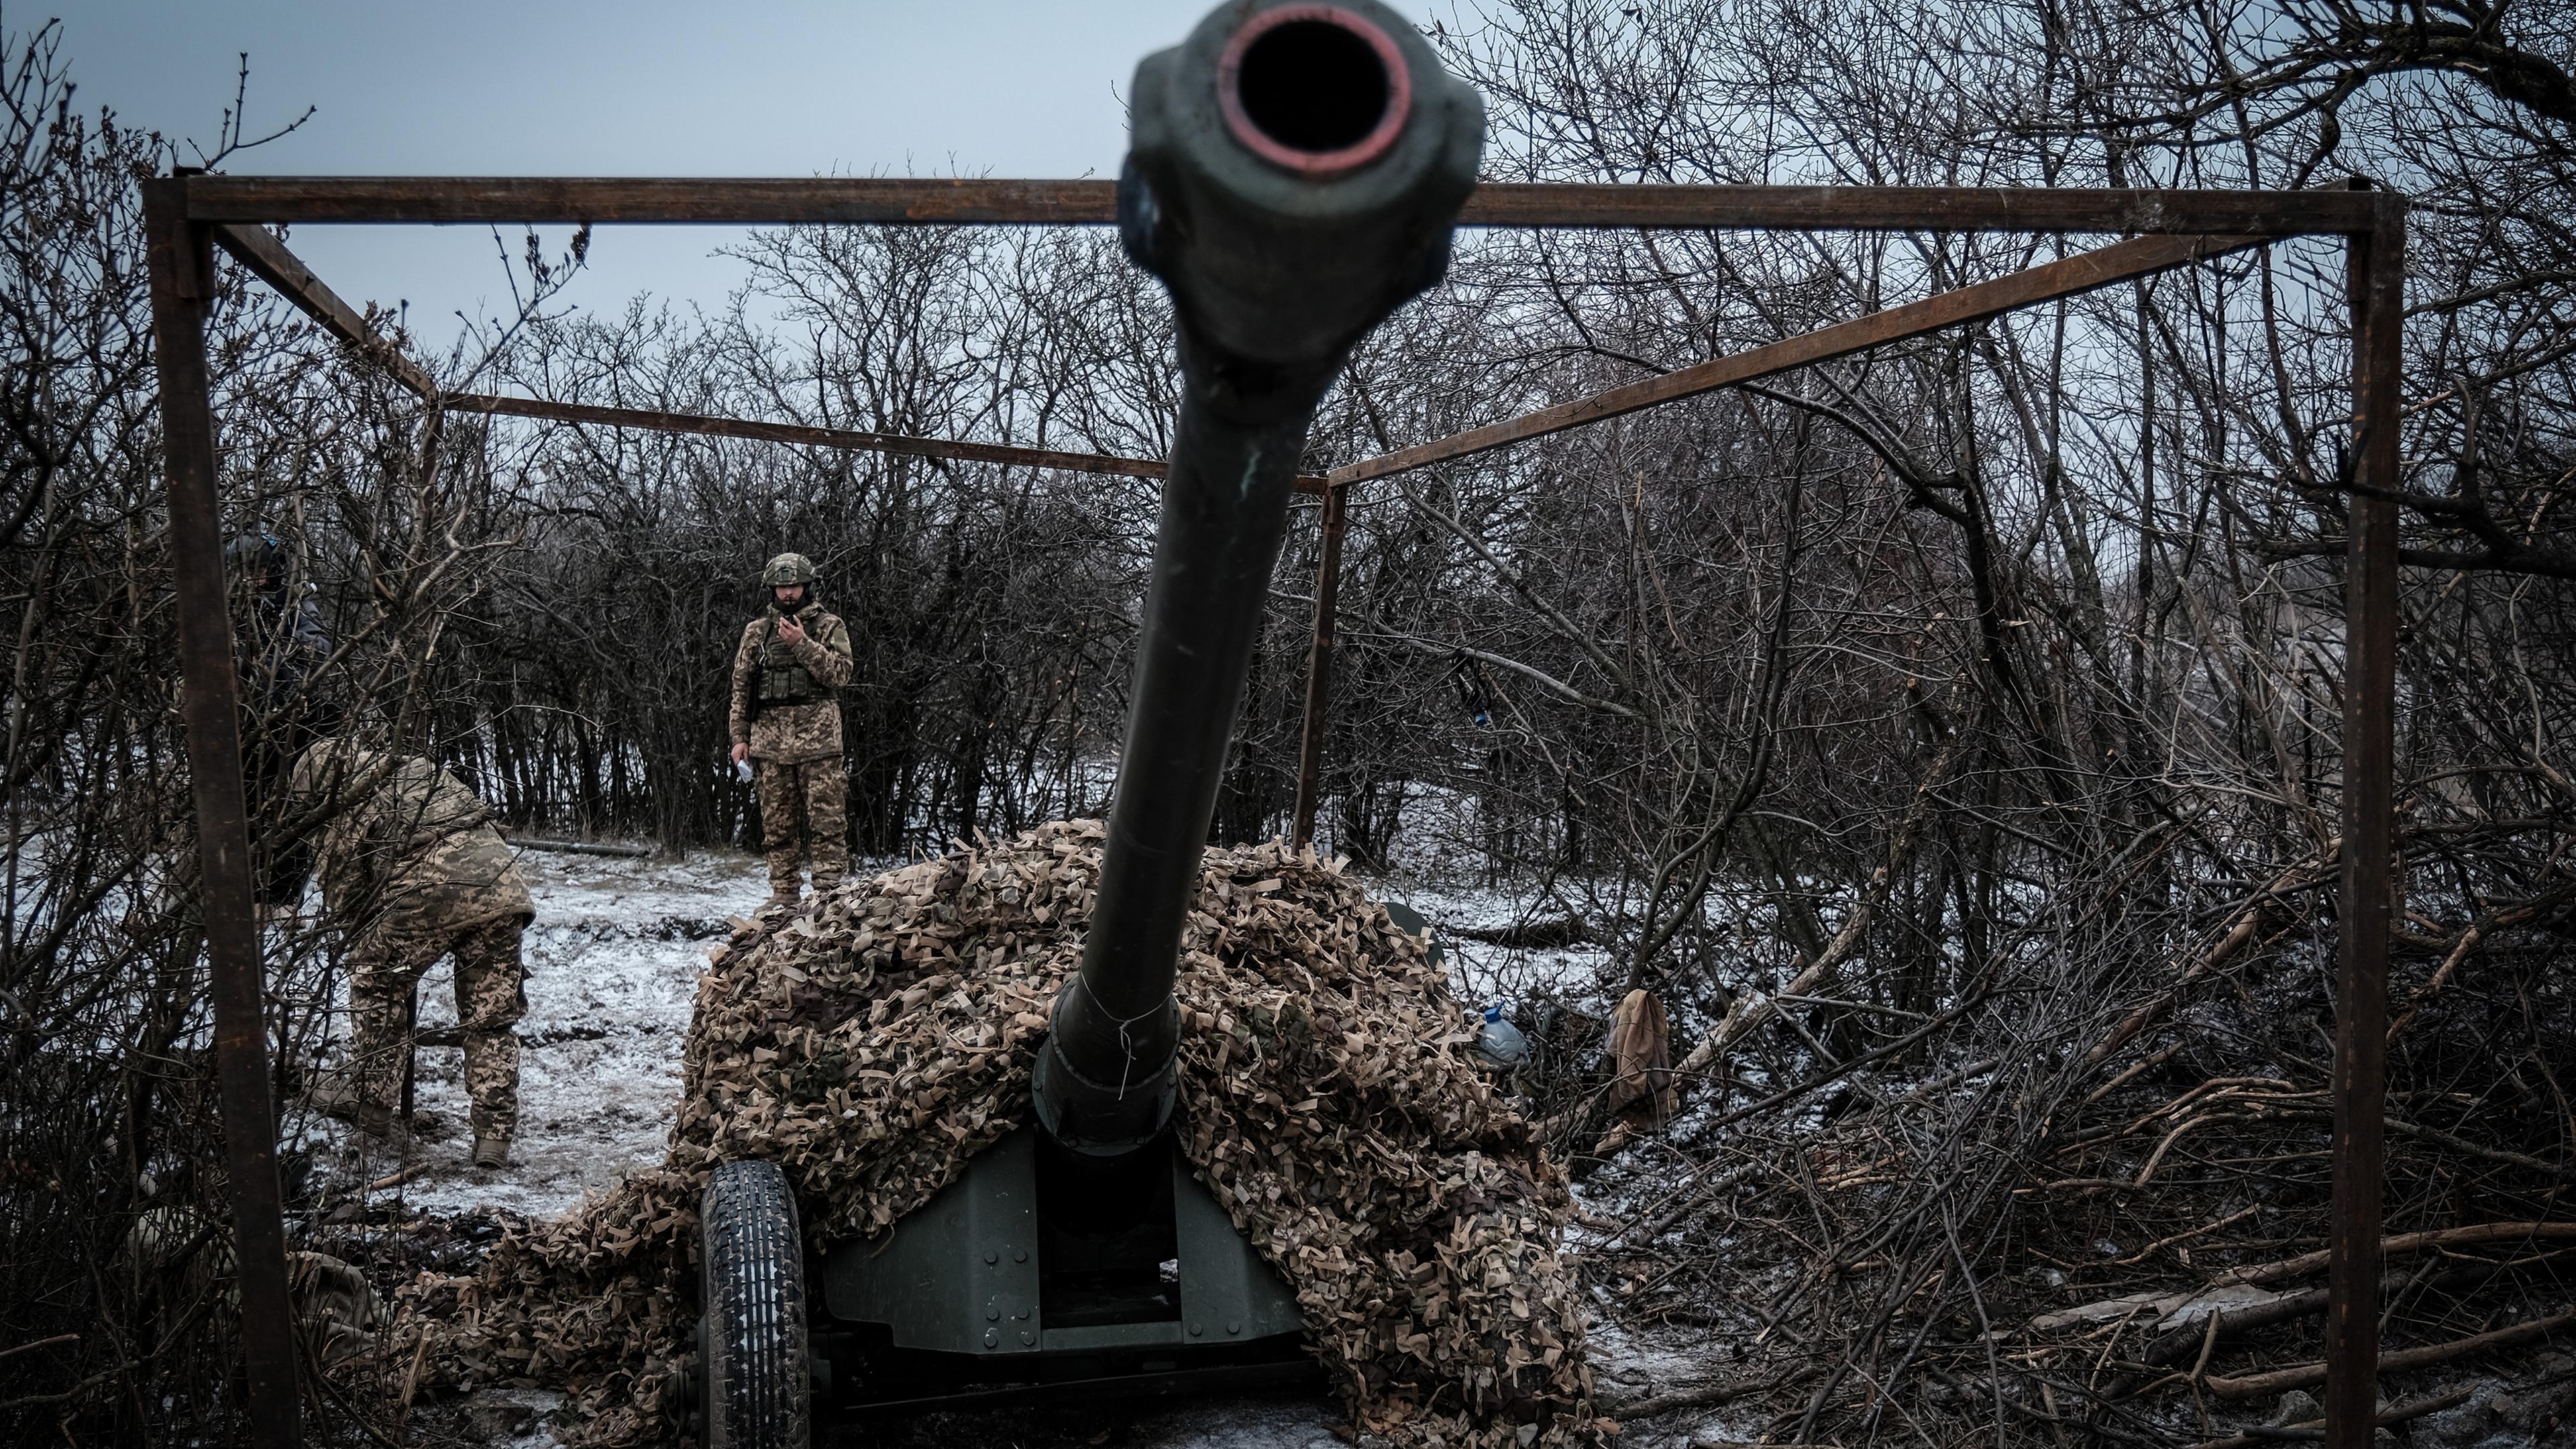 Ukrainische Soldaten bedienen ein Artilleriegeschütz nahe Bachmut in der Ostukraine (Archivbild)